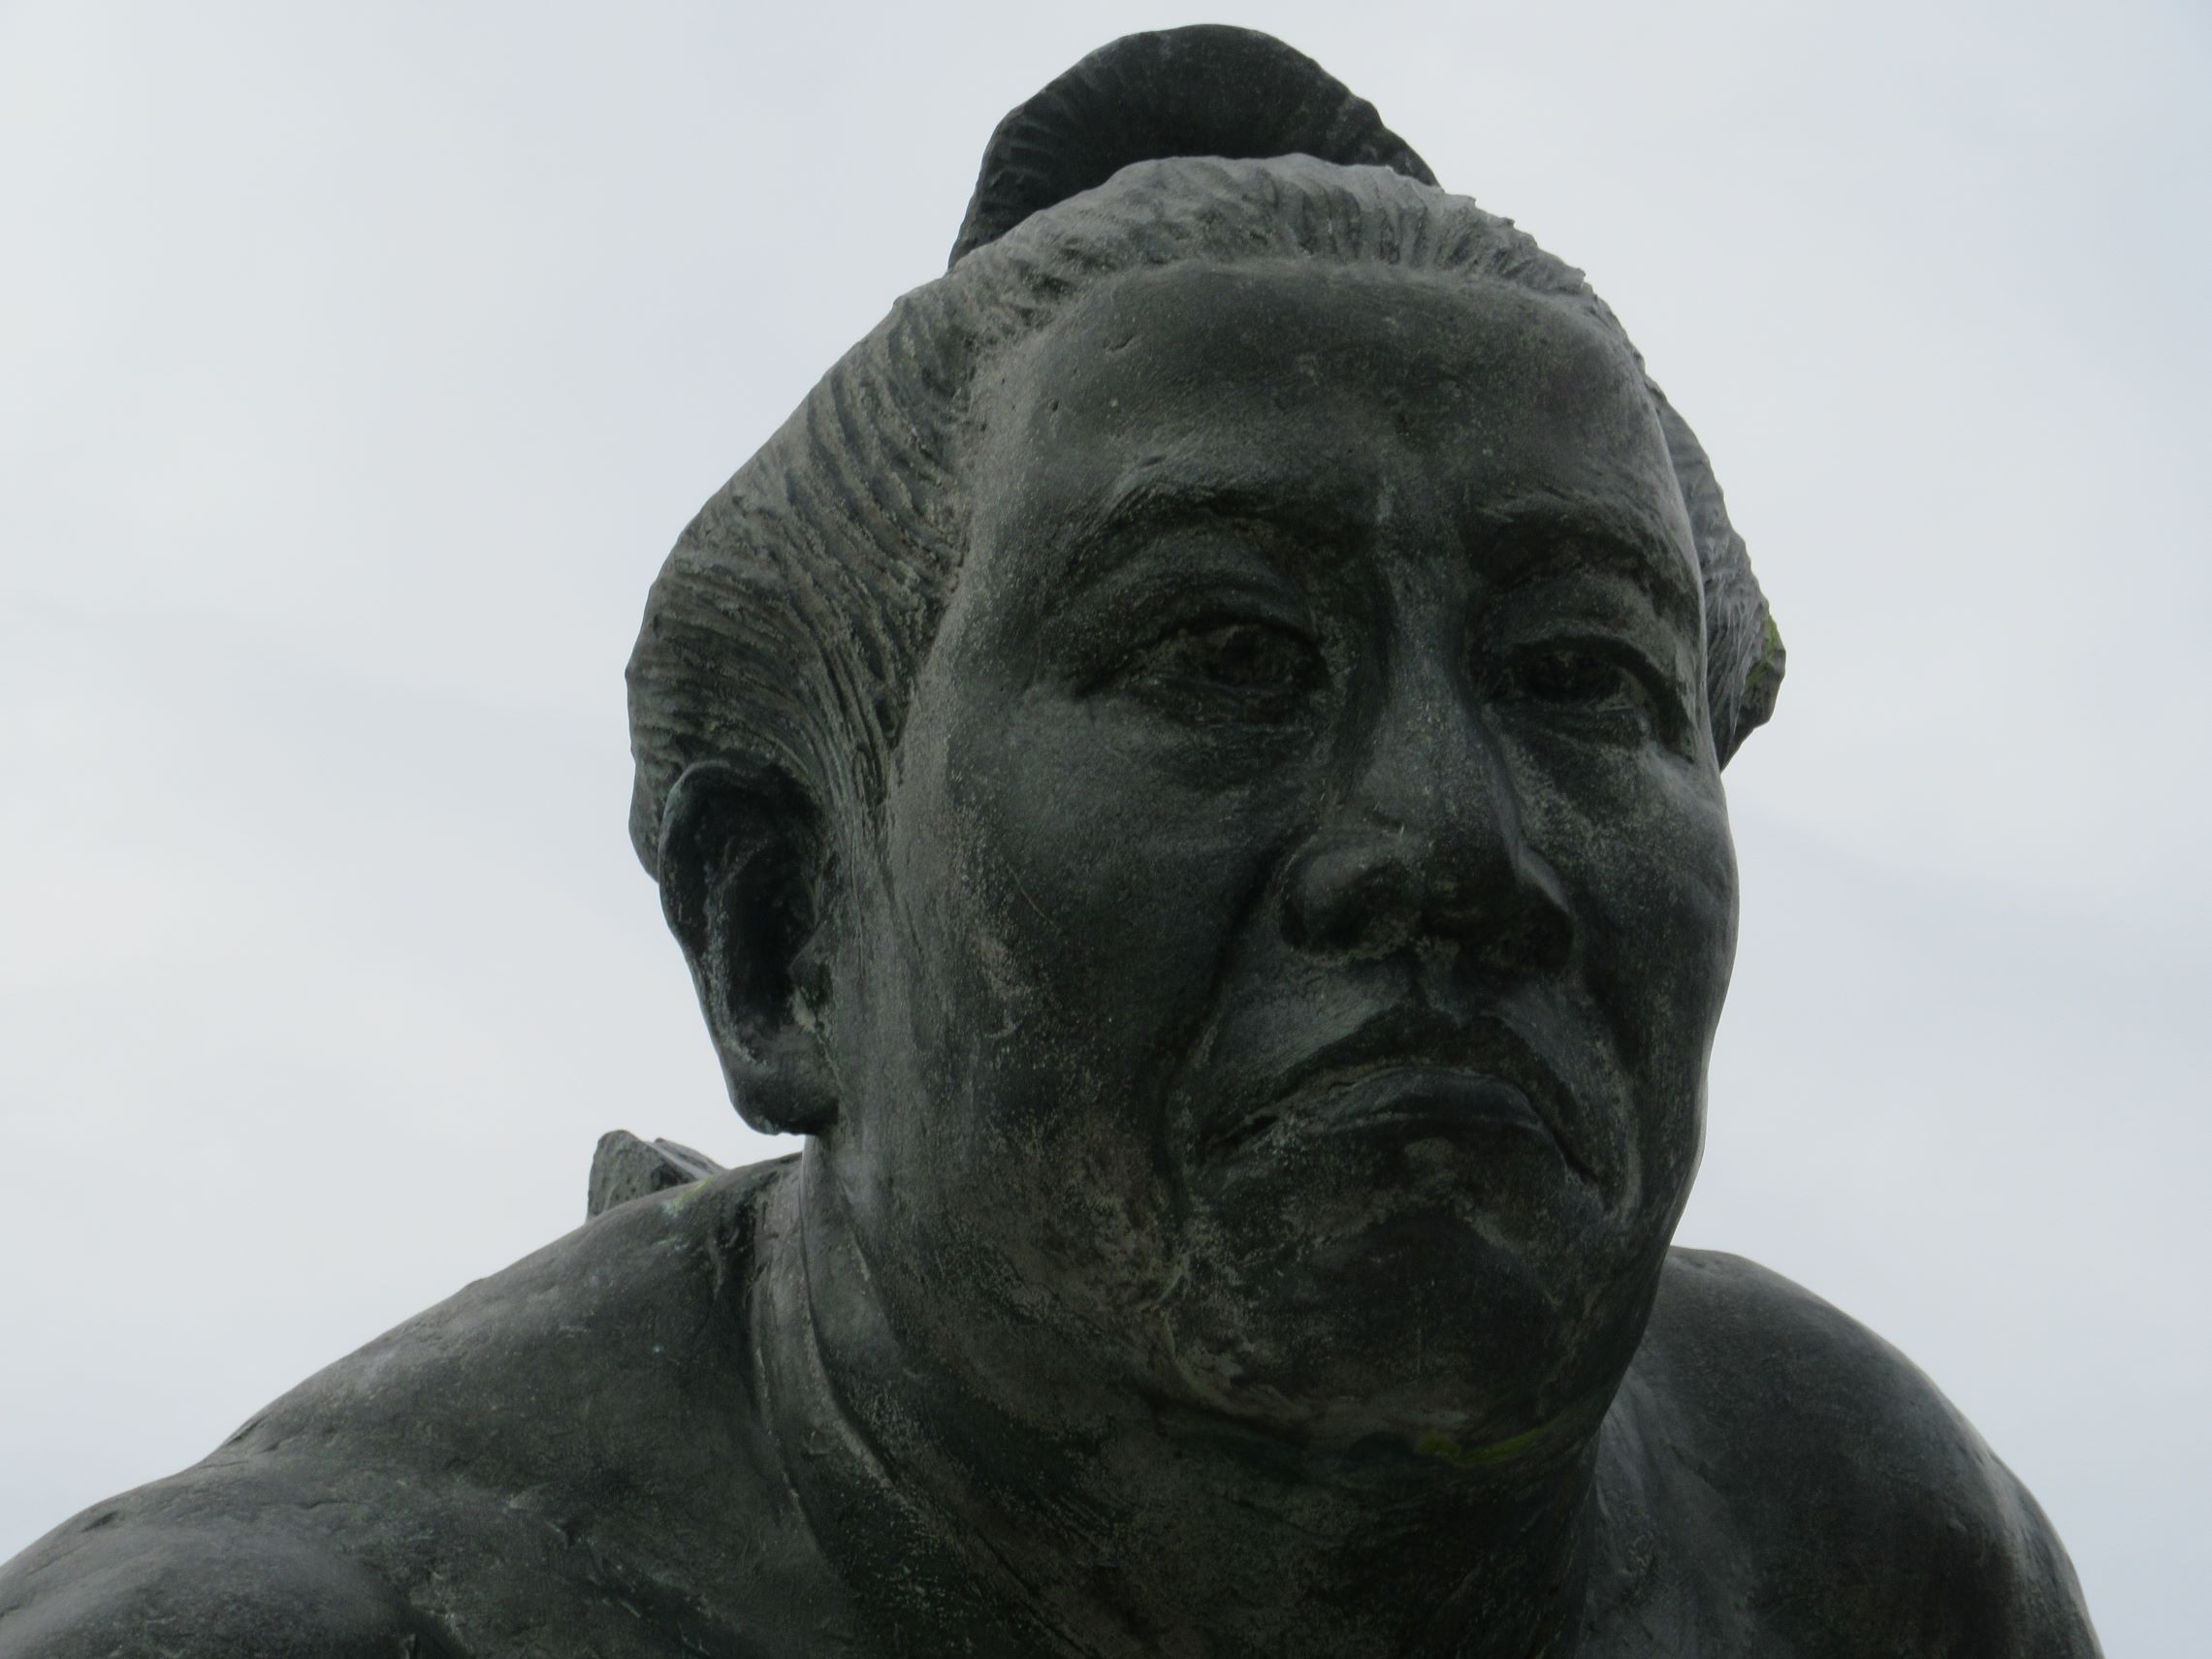 長崎県南松浦郡新上五島町の有川港ターミナル付近にある、第五十代横綱佐田の山関之像の顔を大きく撮影。